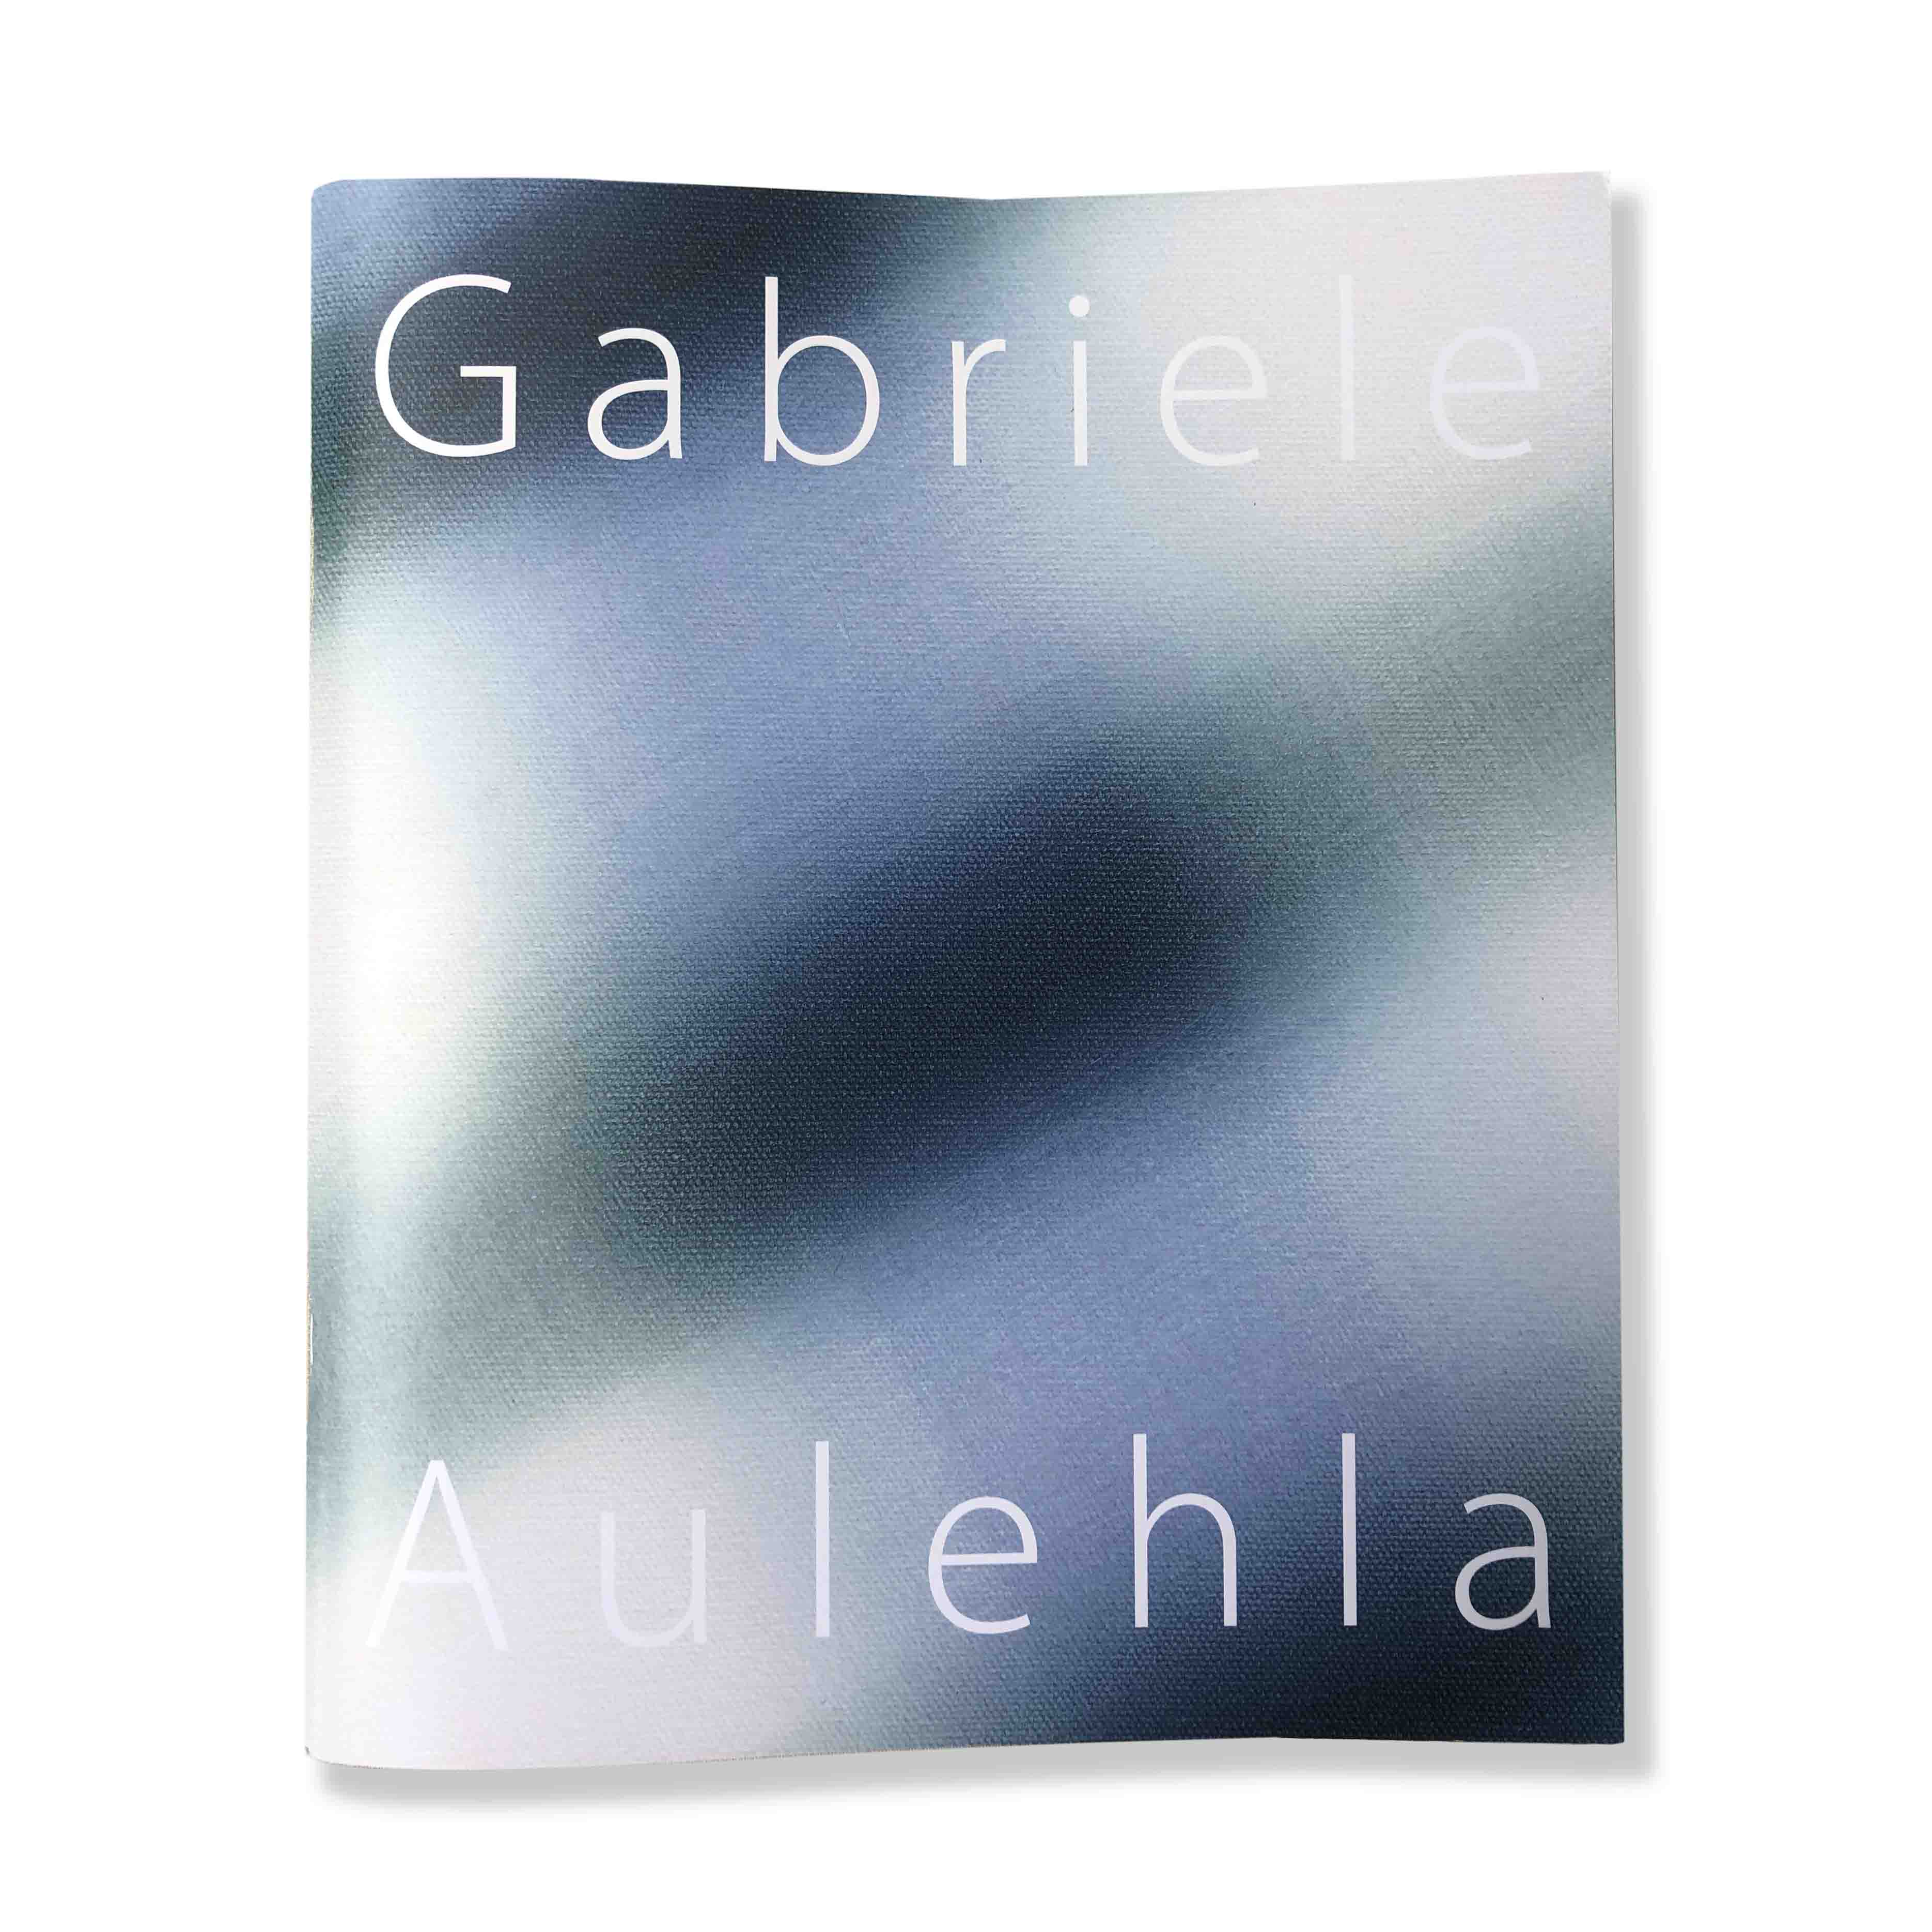 Gabriele Aulehla Katalog 2